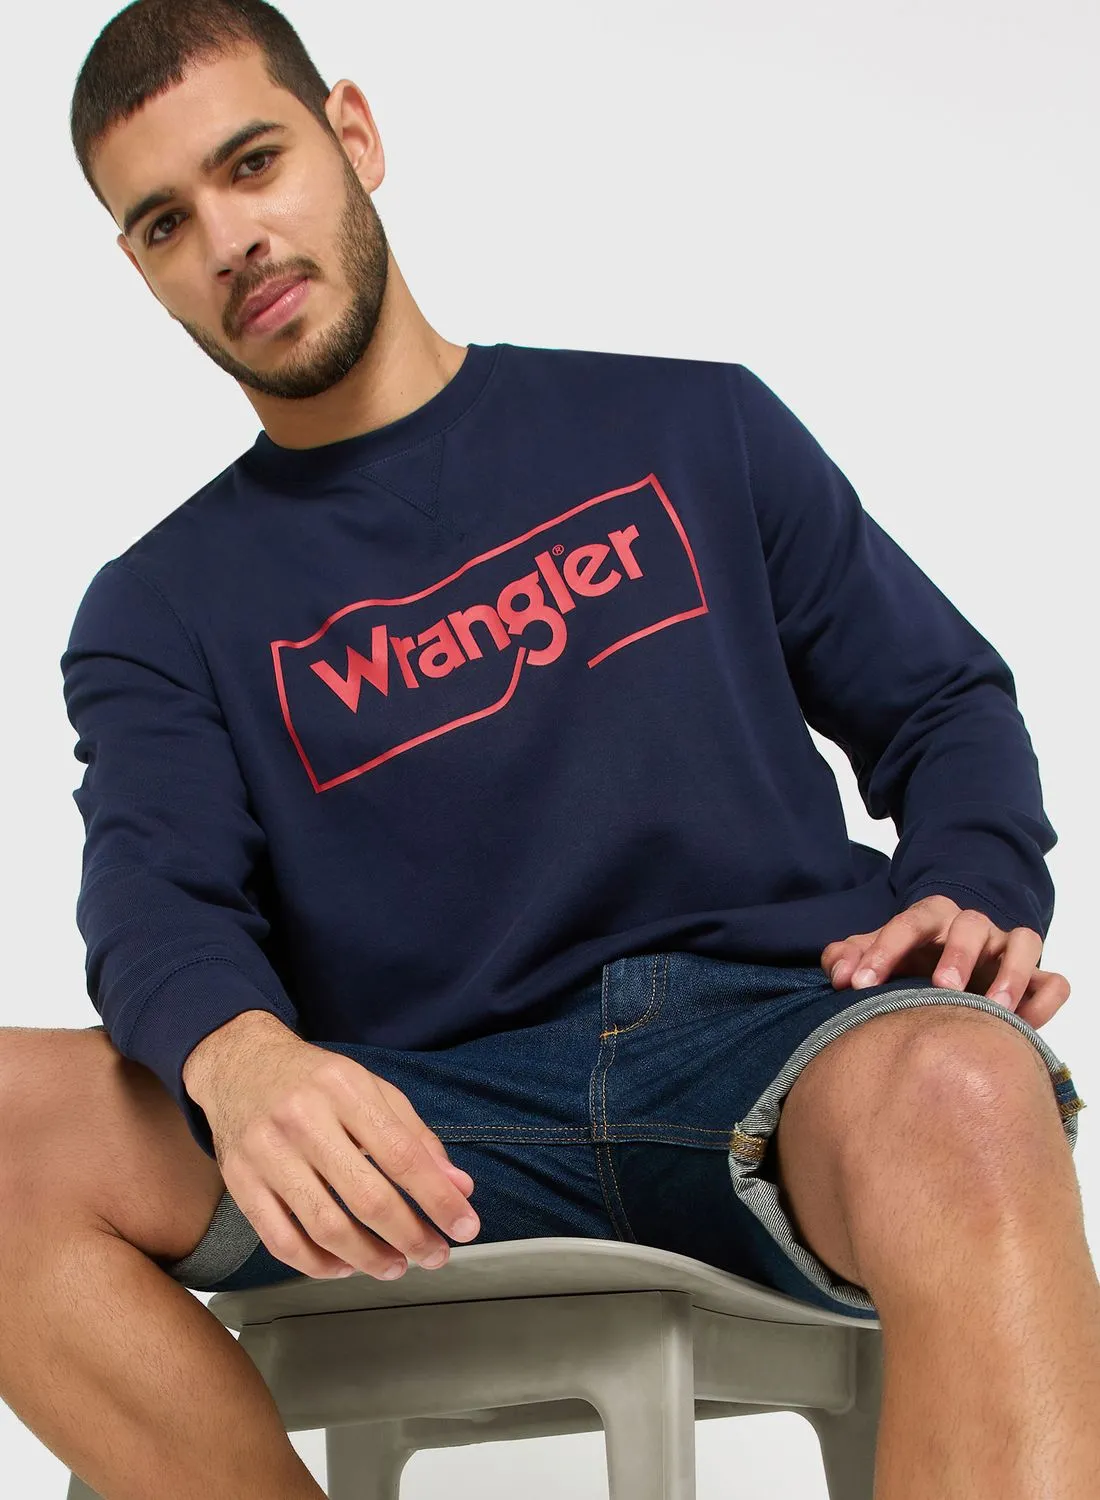 Wrangler Logo Sweatshirt